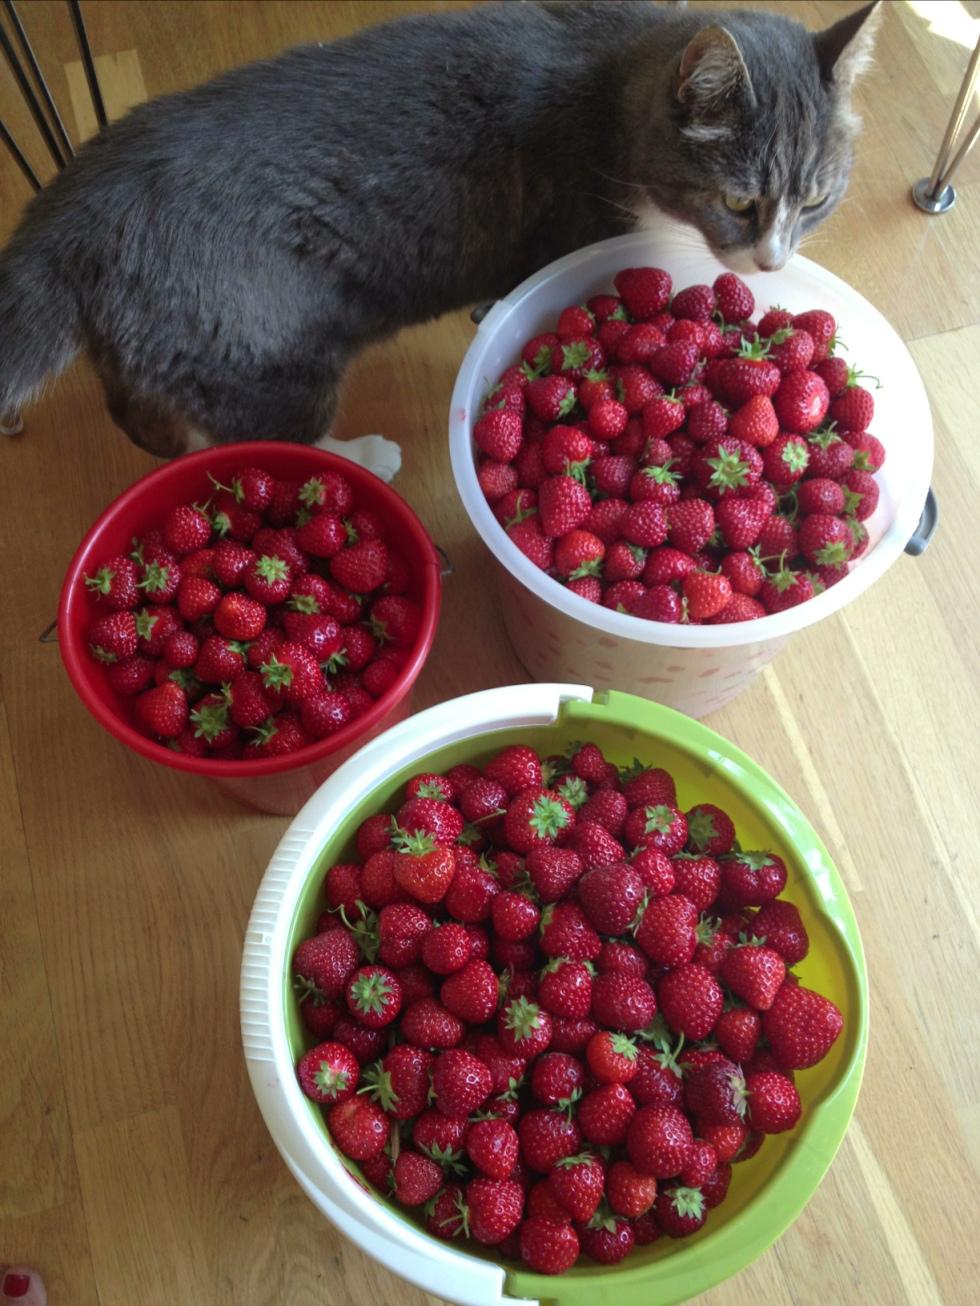 Katten Findus nosar på de nyplockade jordgubbarna.